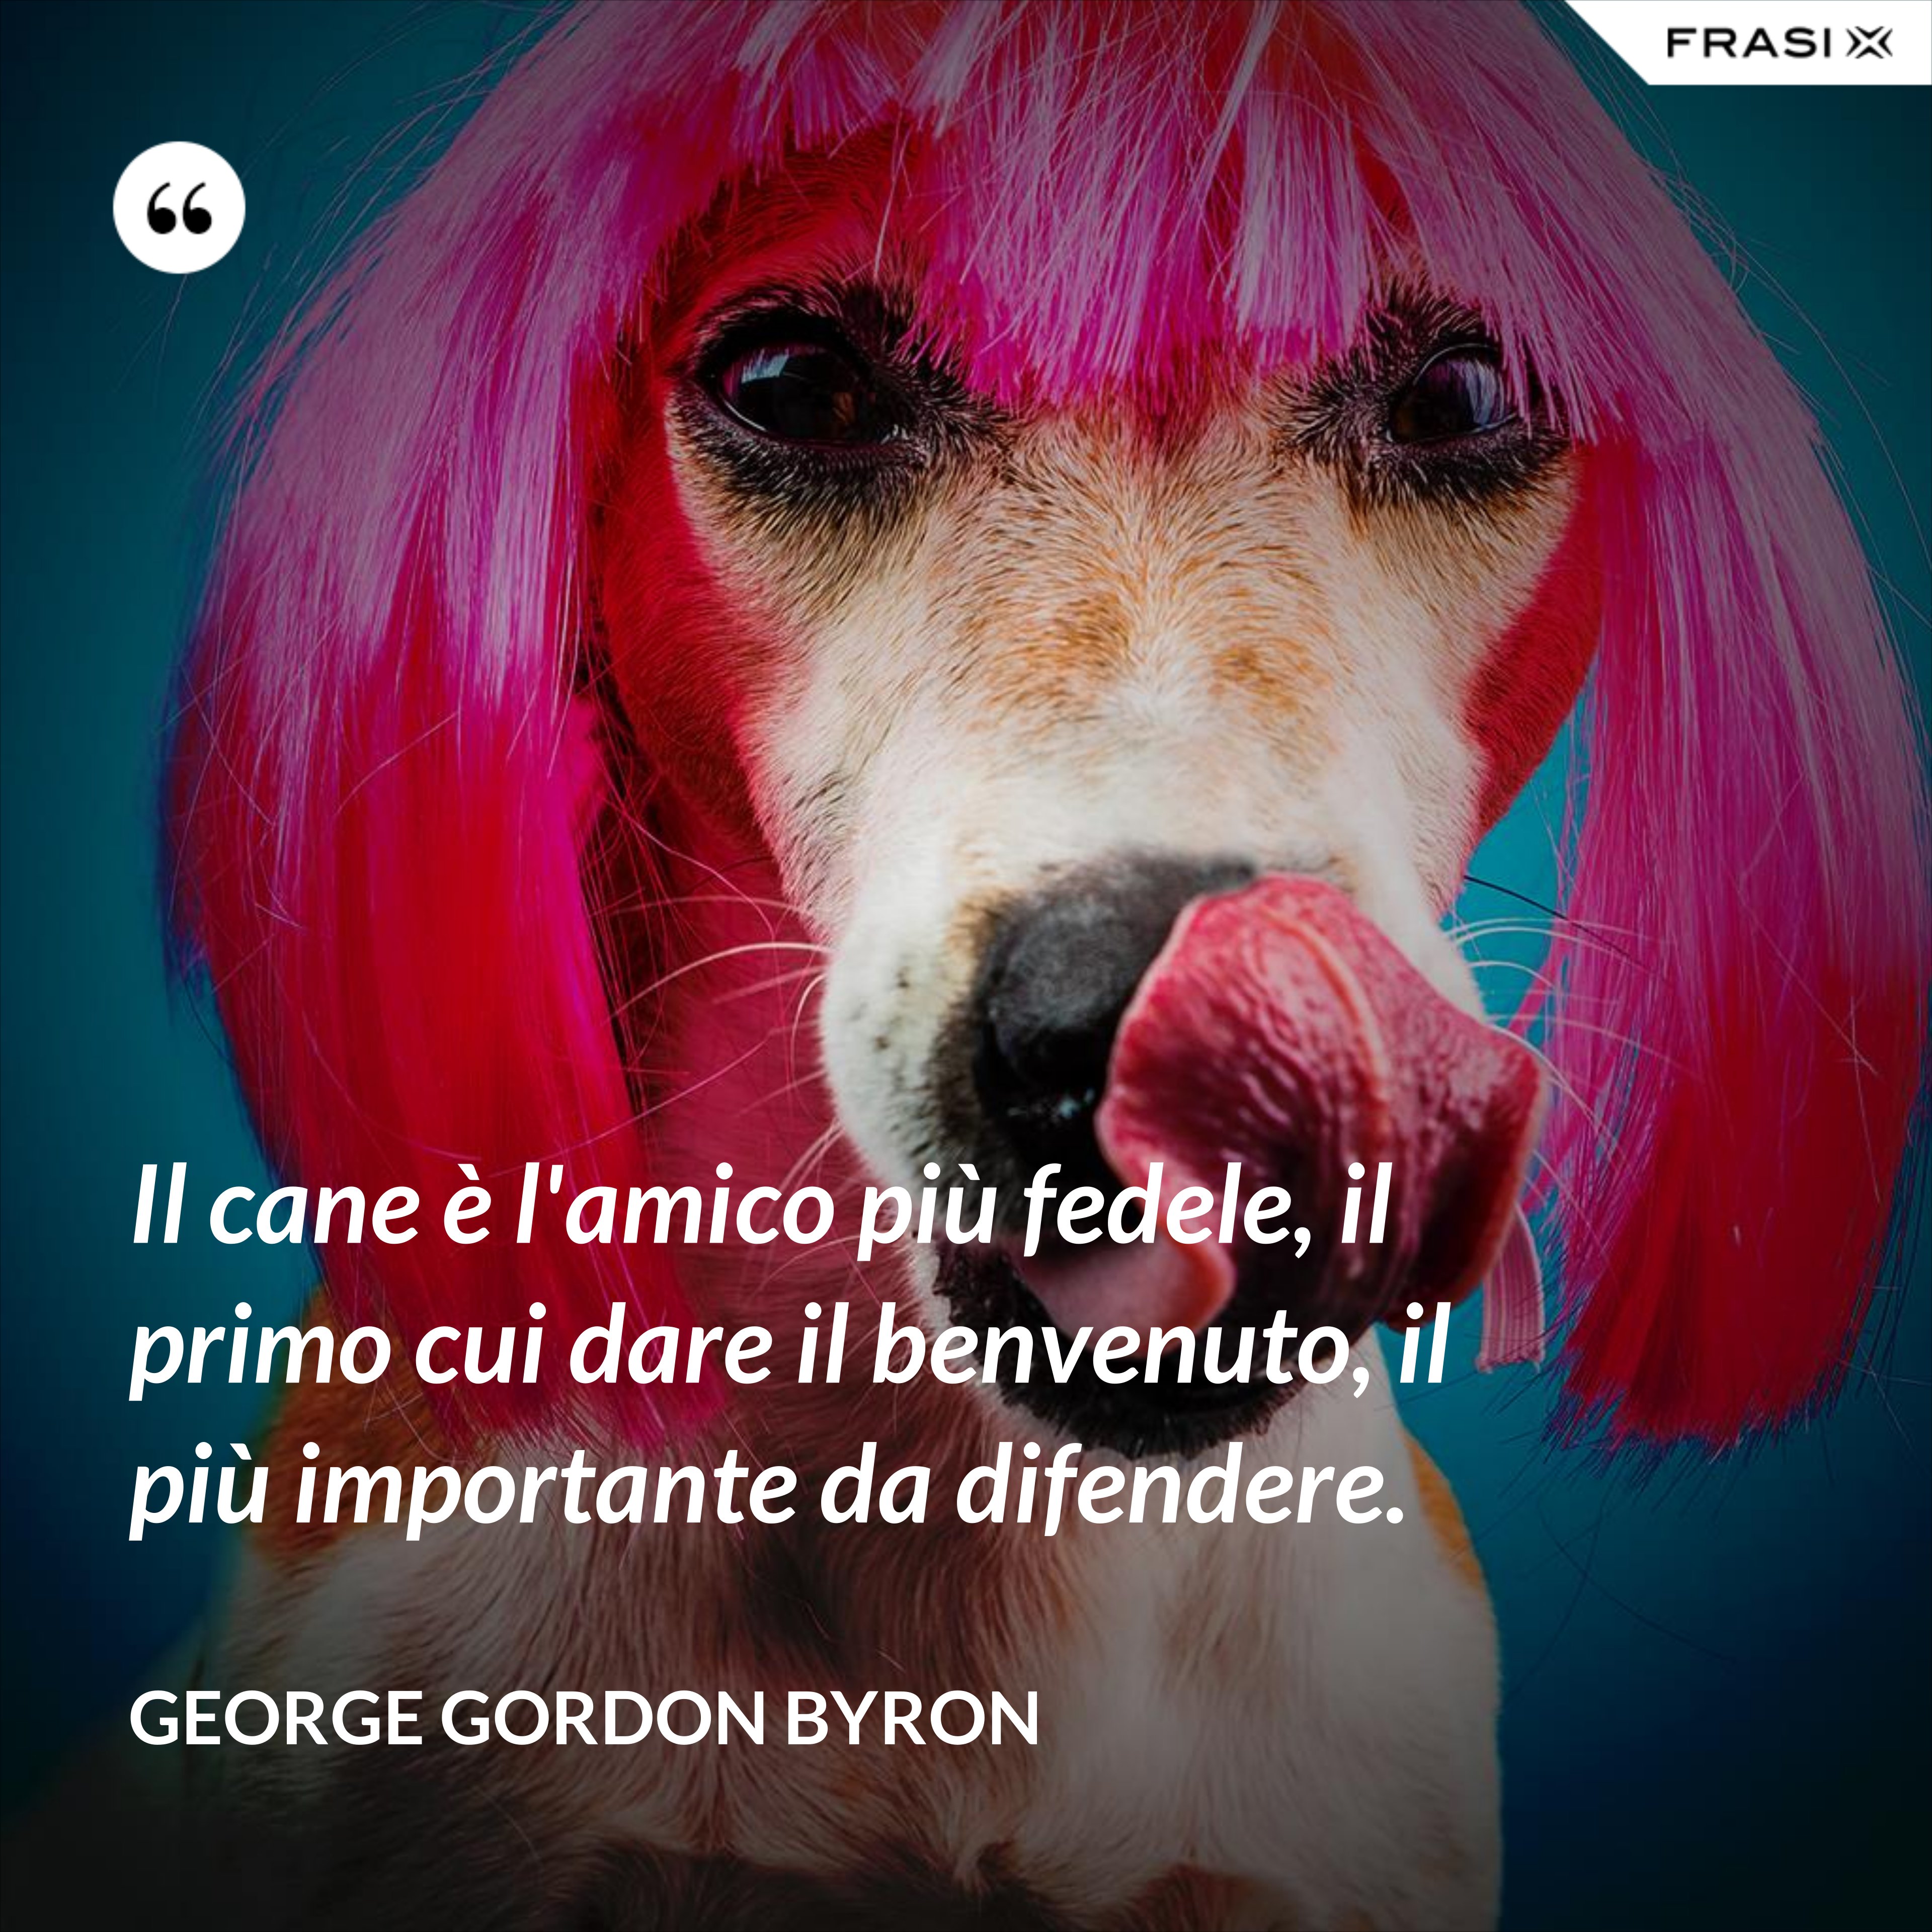 Il cane è l'amico più fedele, il primo cui dare il benvenuto, il più importante da difendere. - George Gordon Byron